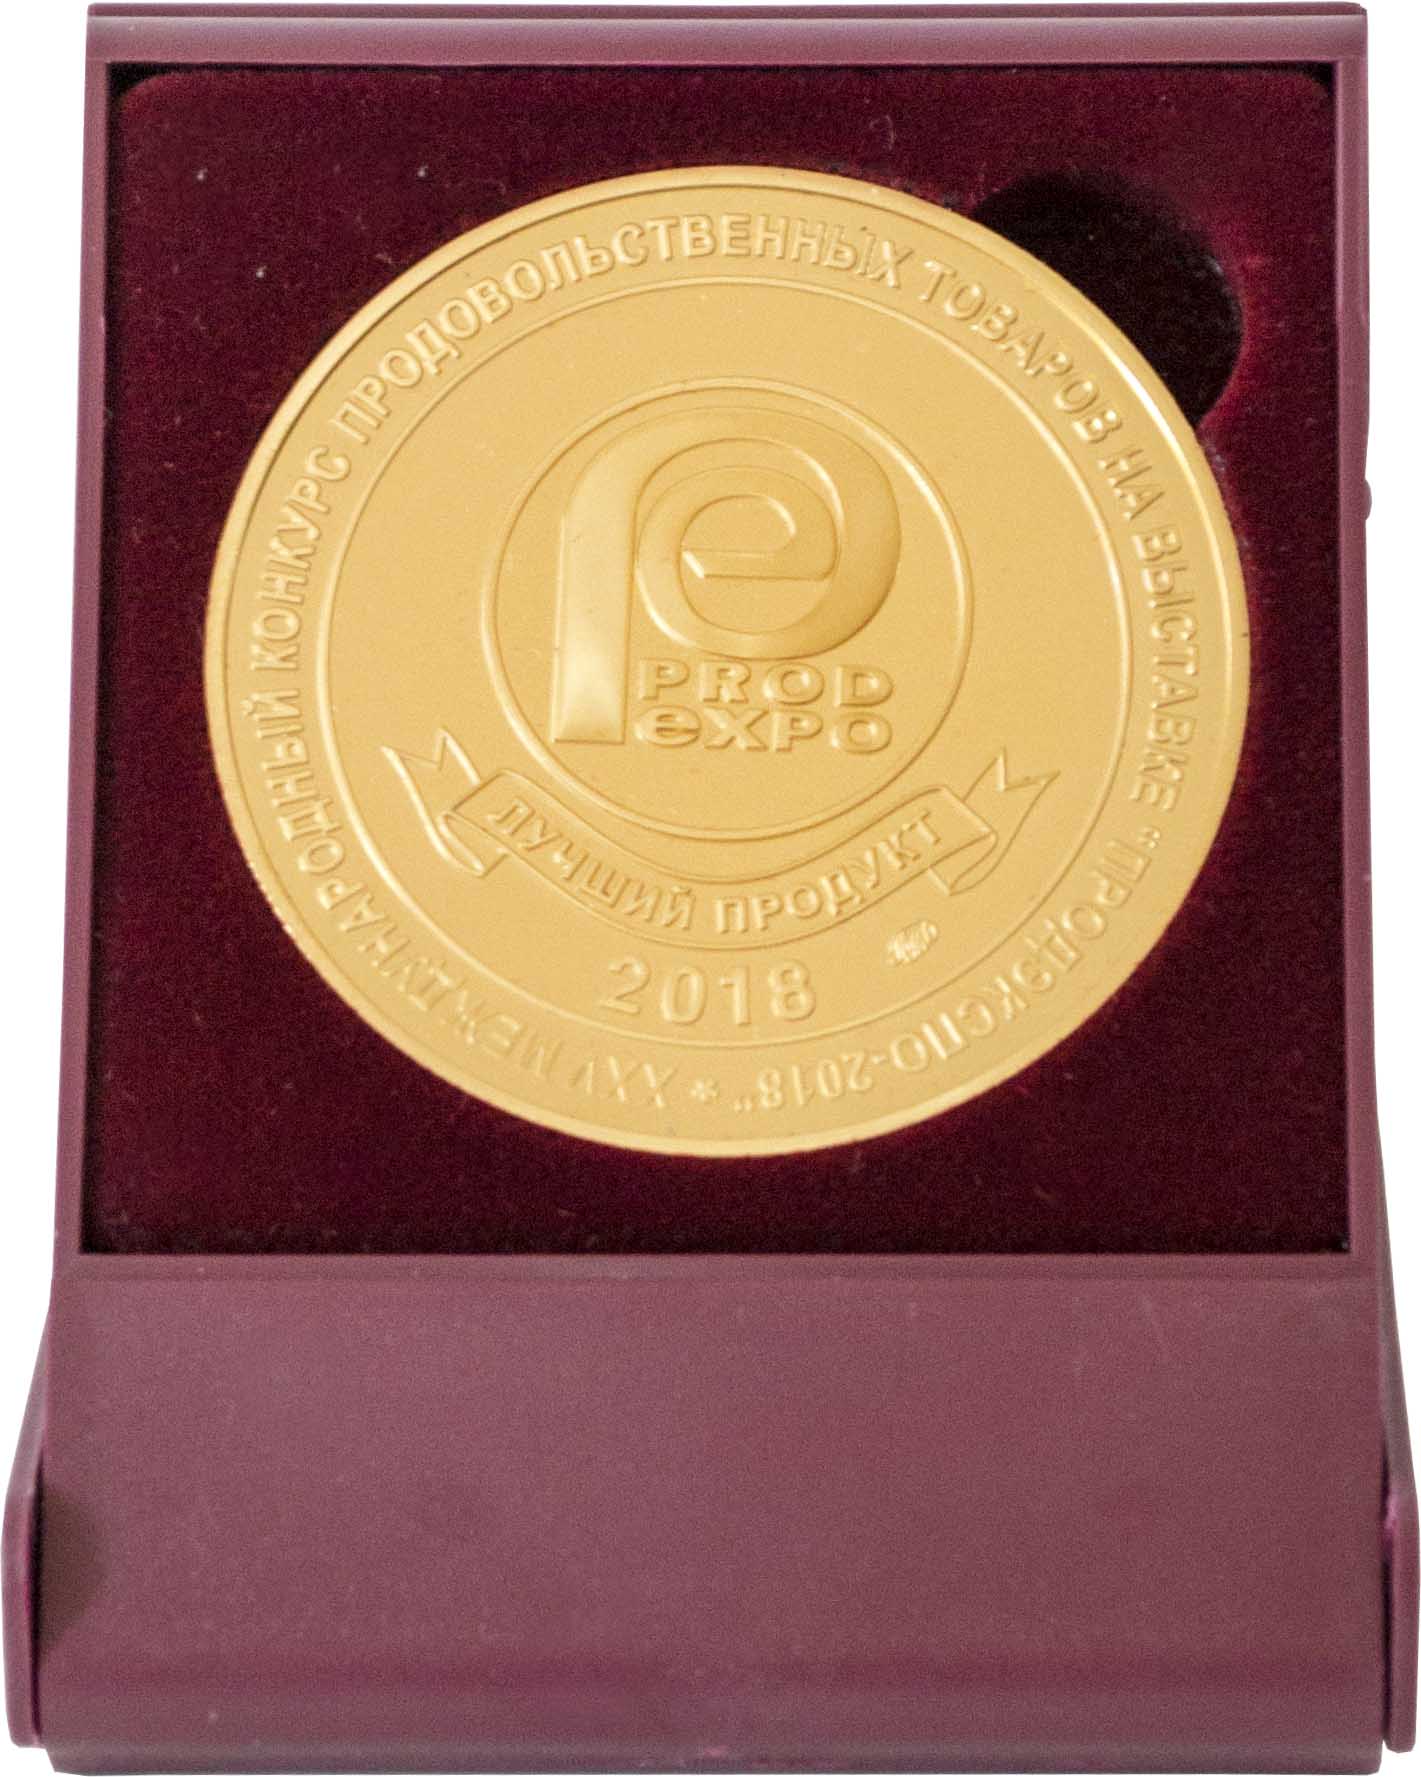 Лучший продукт ПРОД ЭКСПО 2018 - Золотая медаль в Футляре